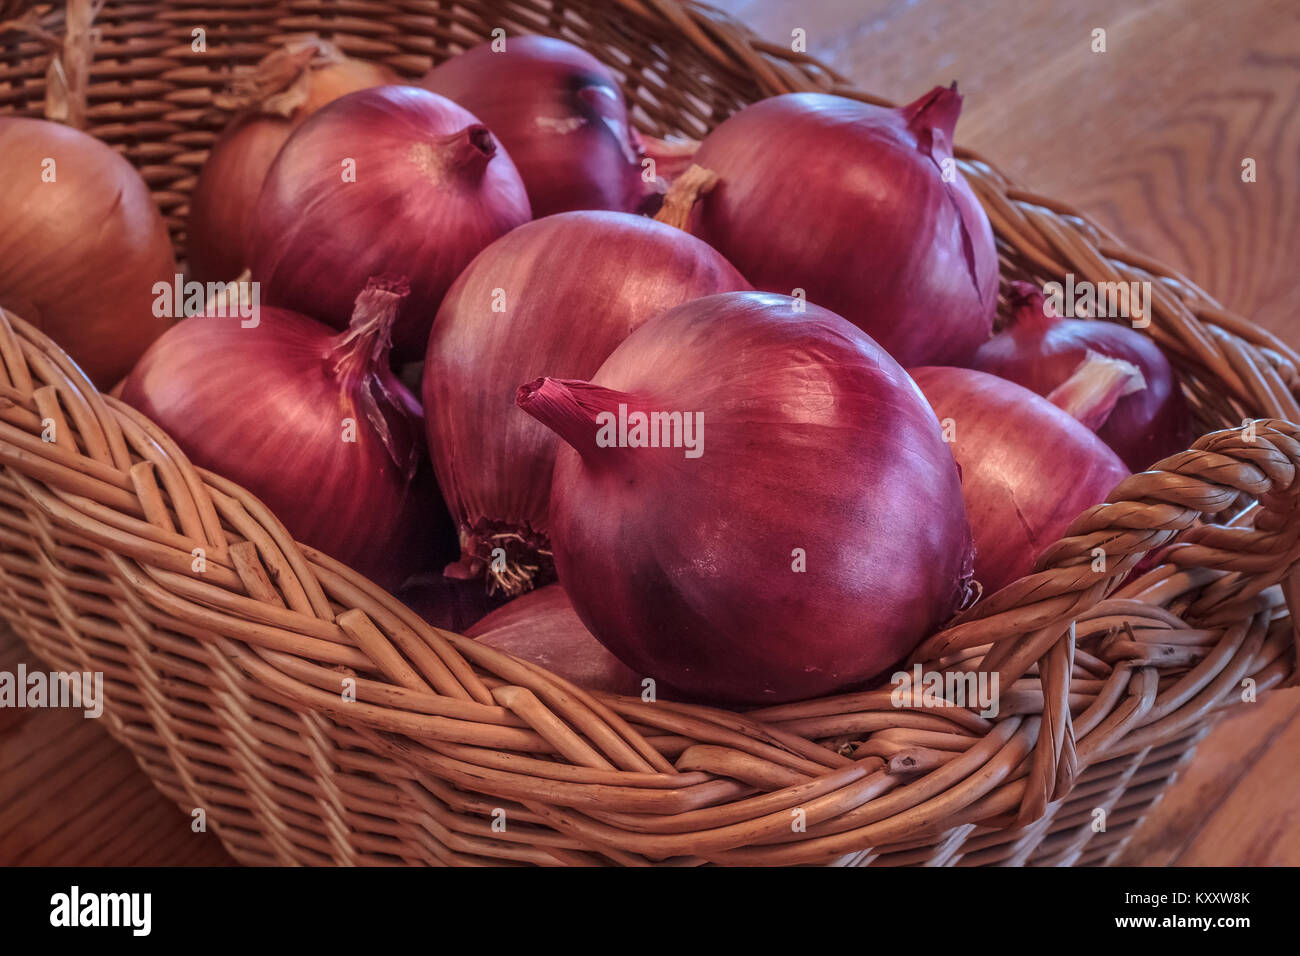 Ein stabiler Weidenkorb auf einen hölzernen Tisch Teil einer Ernte von homegrown Organic rote Zwiebeln (redwing Sorte), bereit für den Einsatz in der Küche. Stockfoto